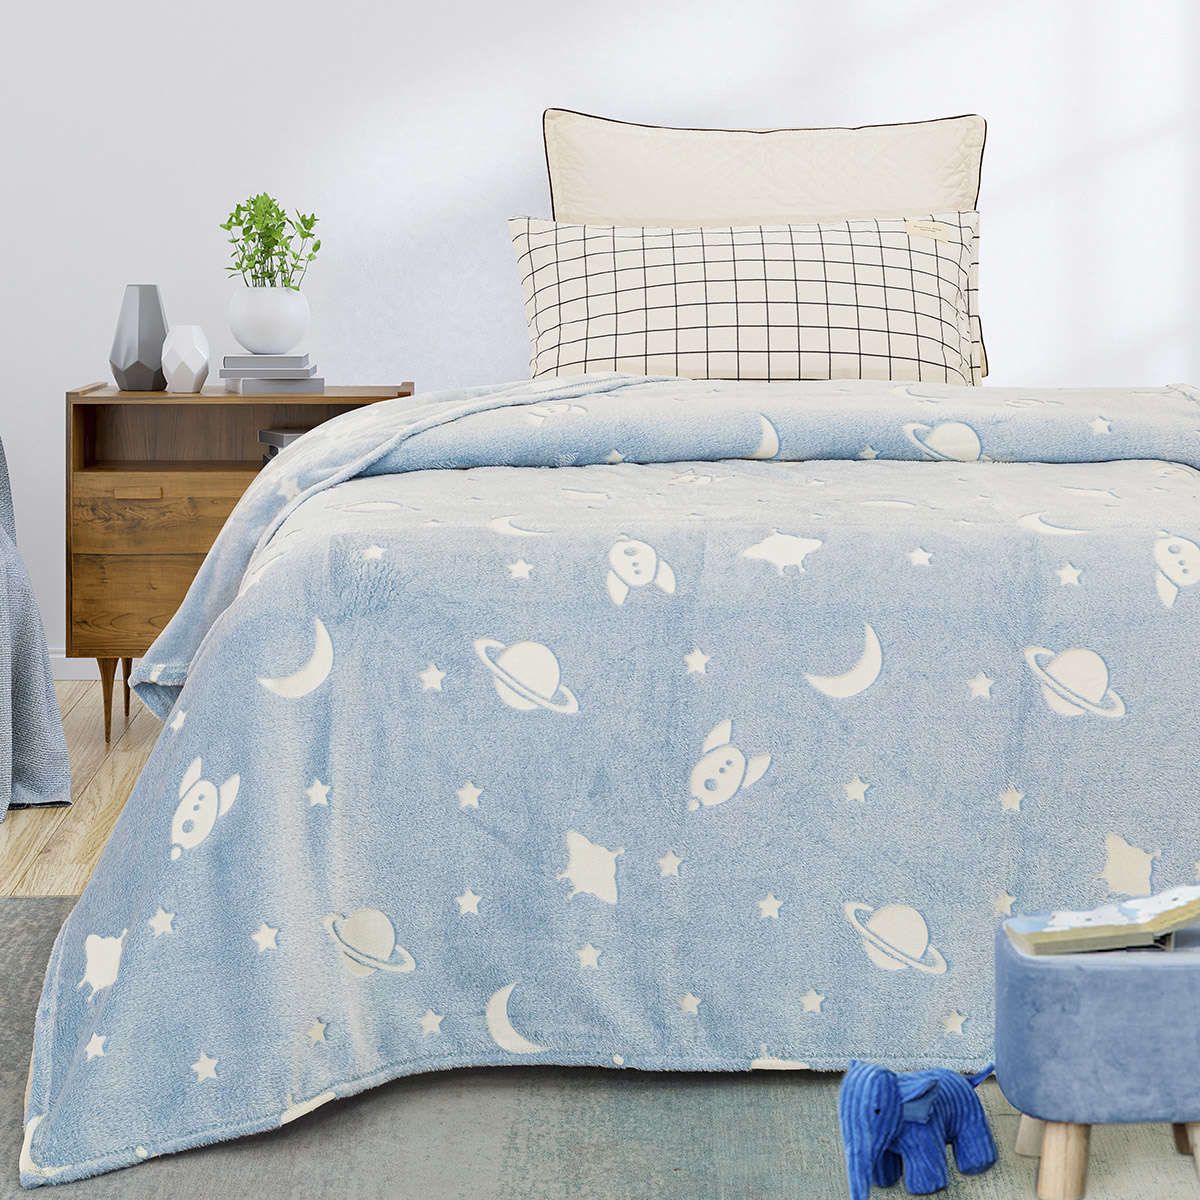 Παιδική κουβέρτα μονή φωσφορίζουσα Art 6253 light blue beauty home